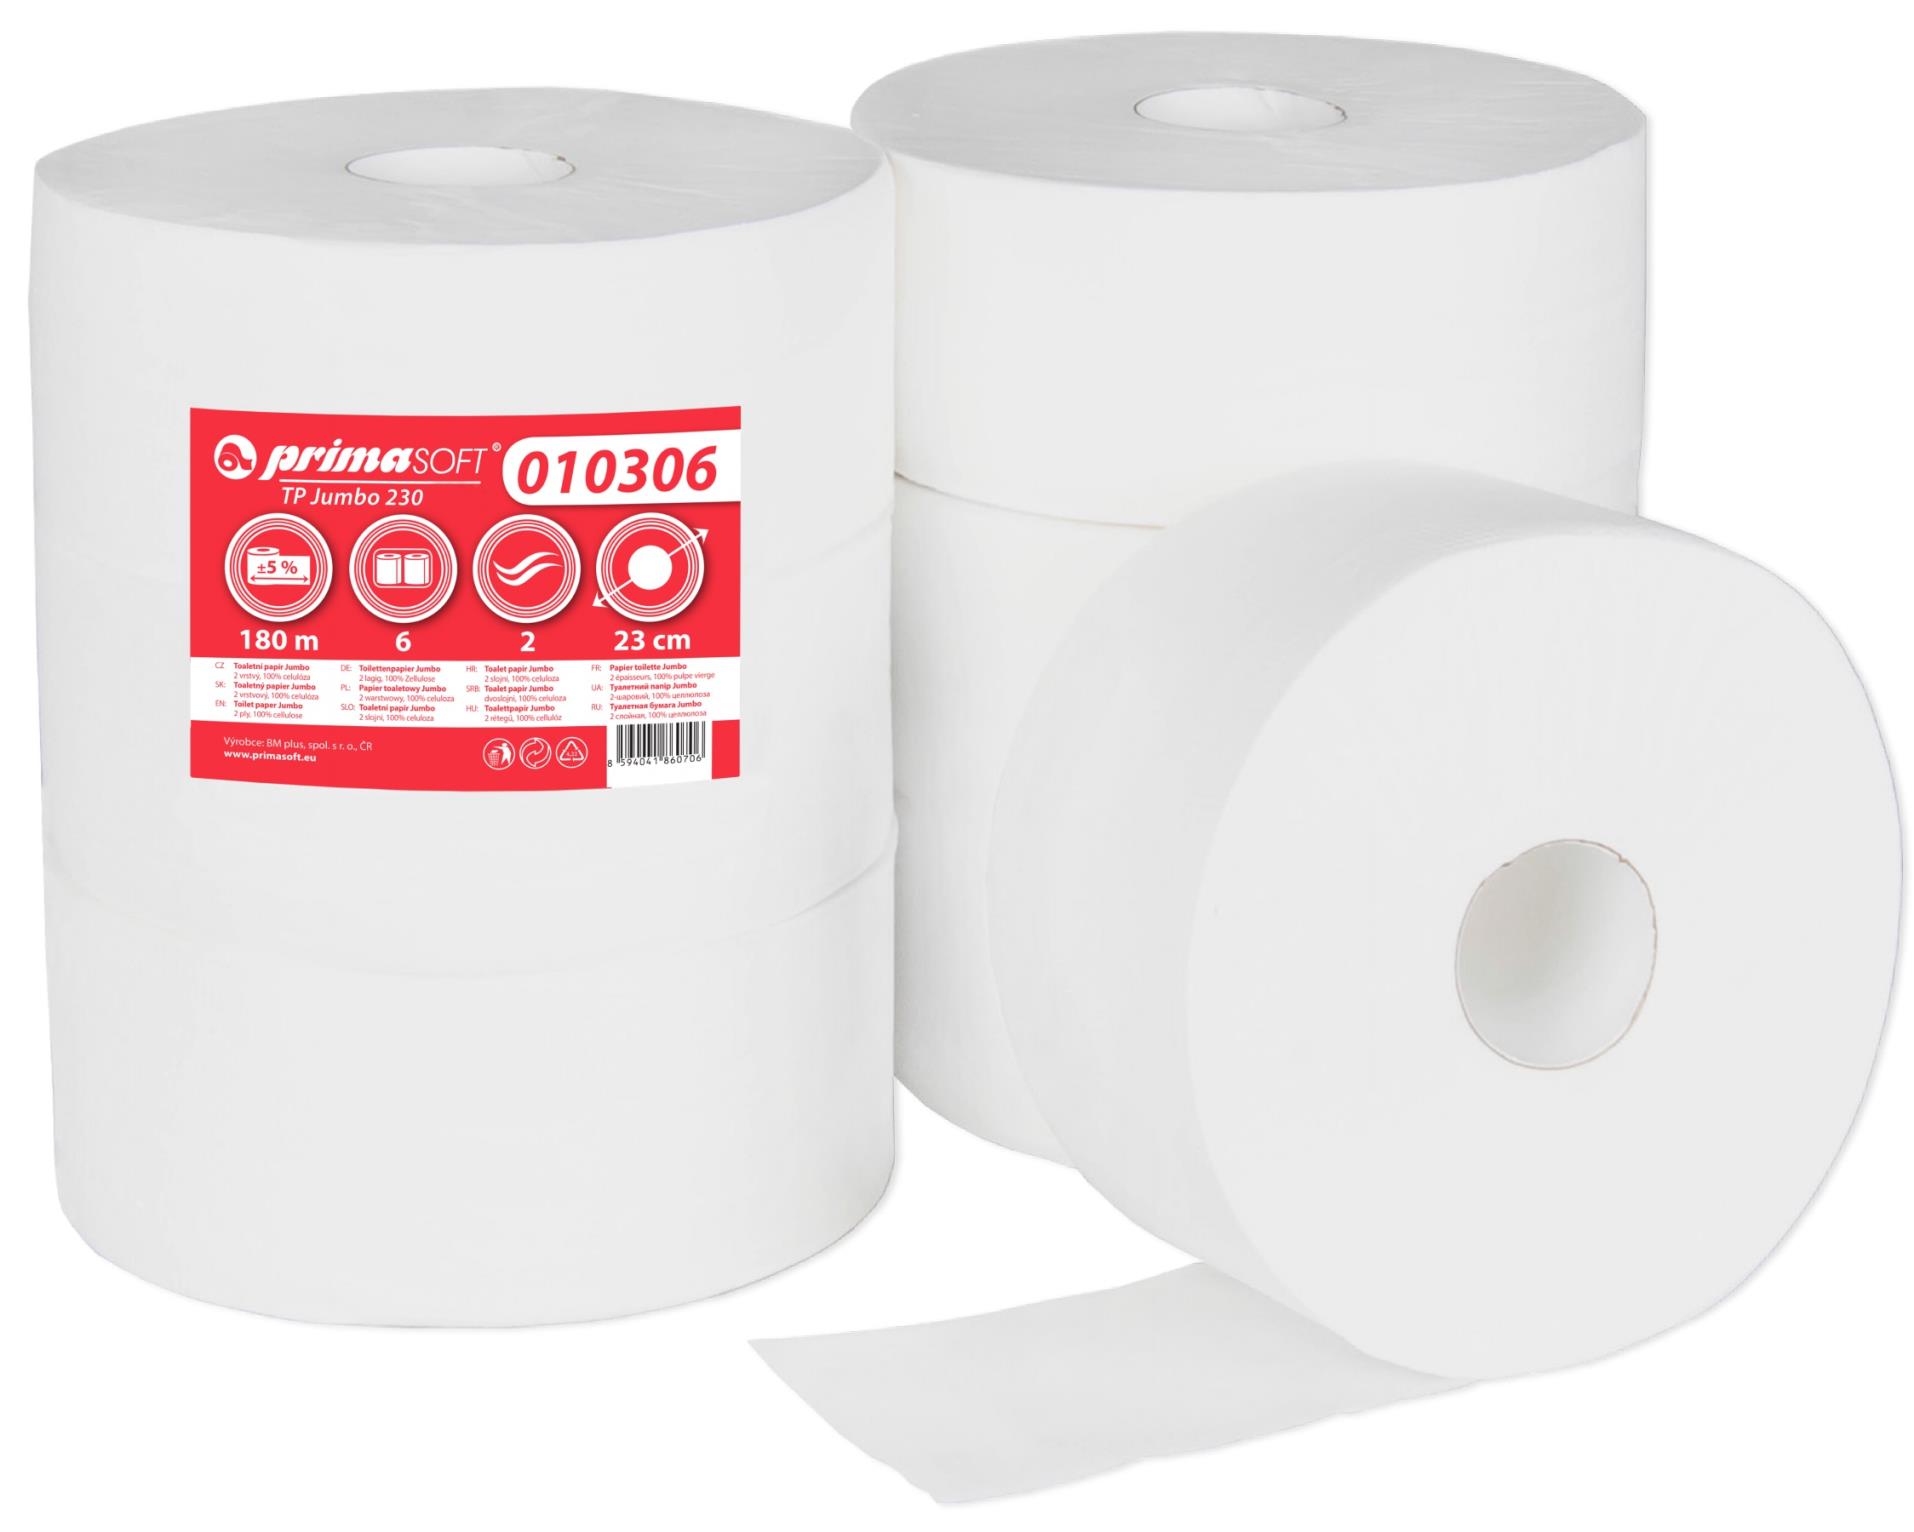 Toaletní papír jumbo PrimaSoft - 2vrstvý, celulóza, 23 cm, 6 rolí